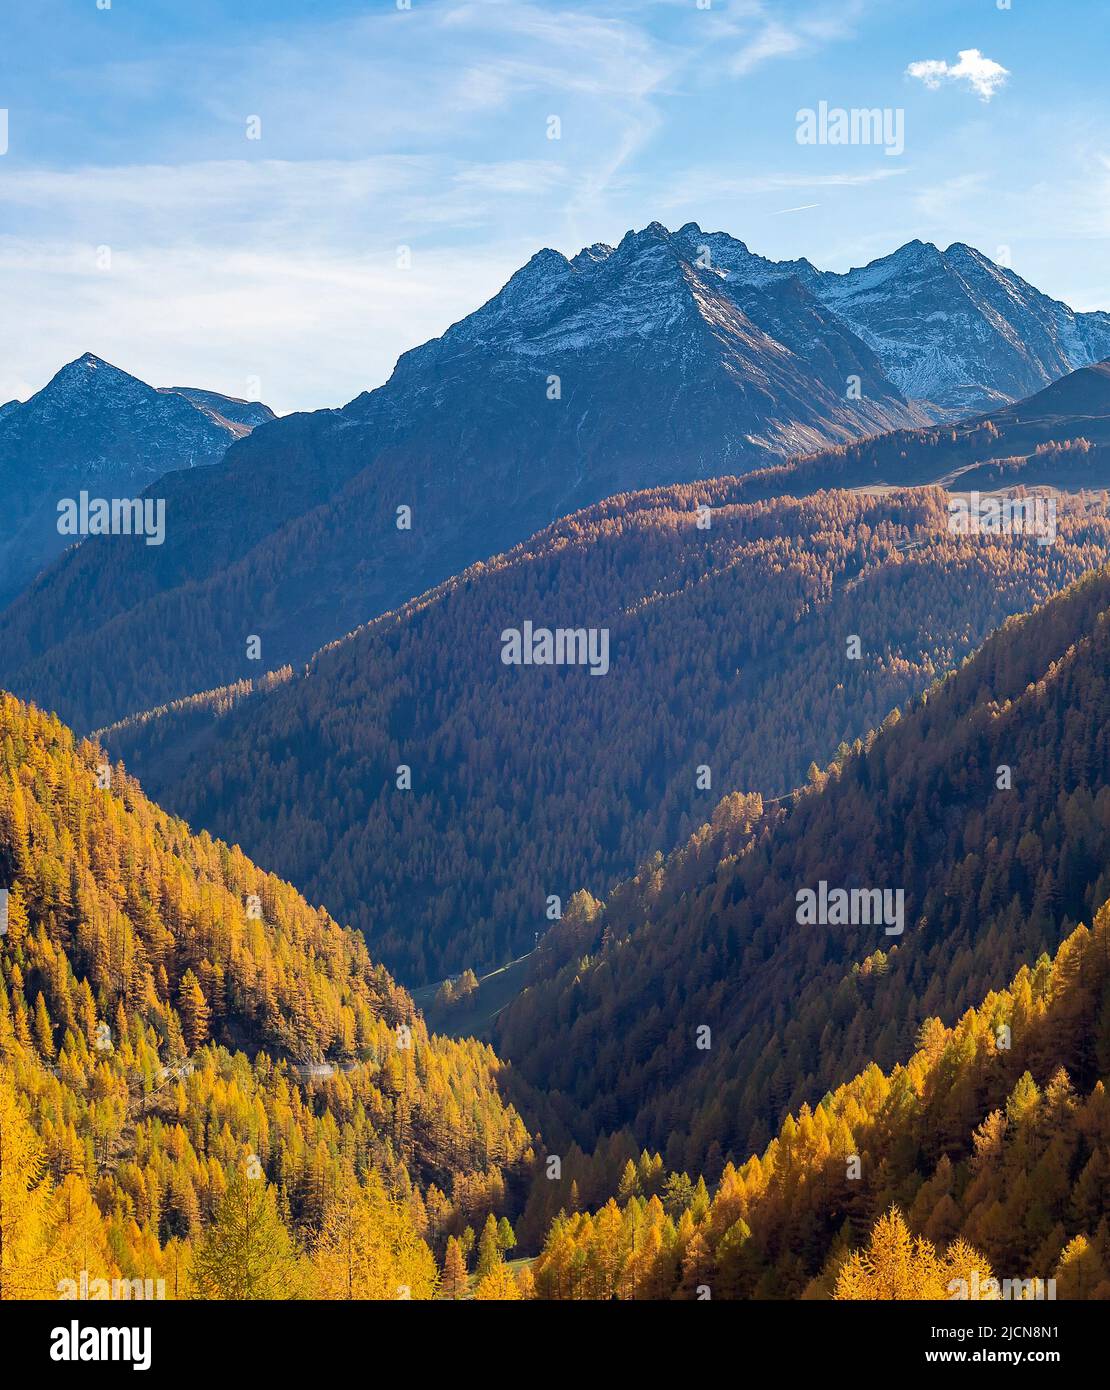 Paisaje aéreo con pendientes de montaña cubiertas de bosque, picos nevados en el fondo en el soleado día de otoño, Alpes, Austria Foto de stock